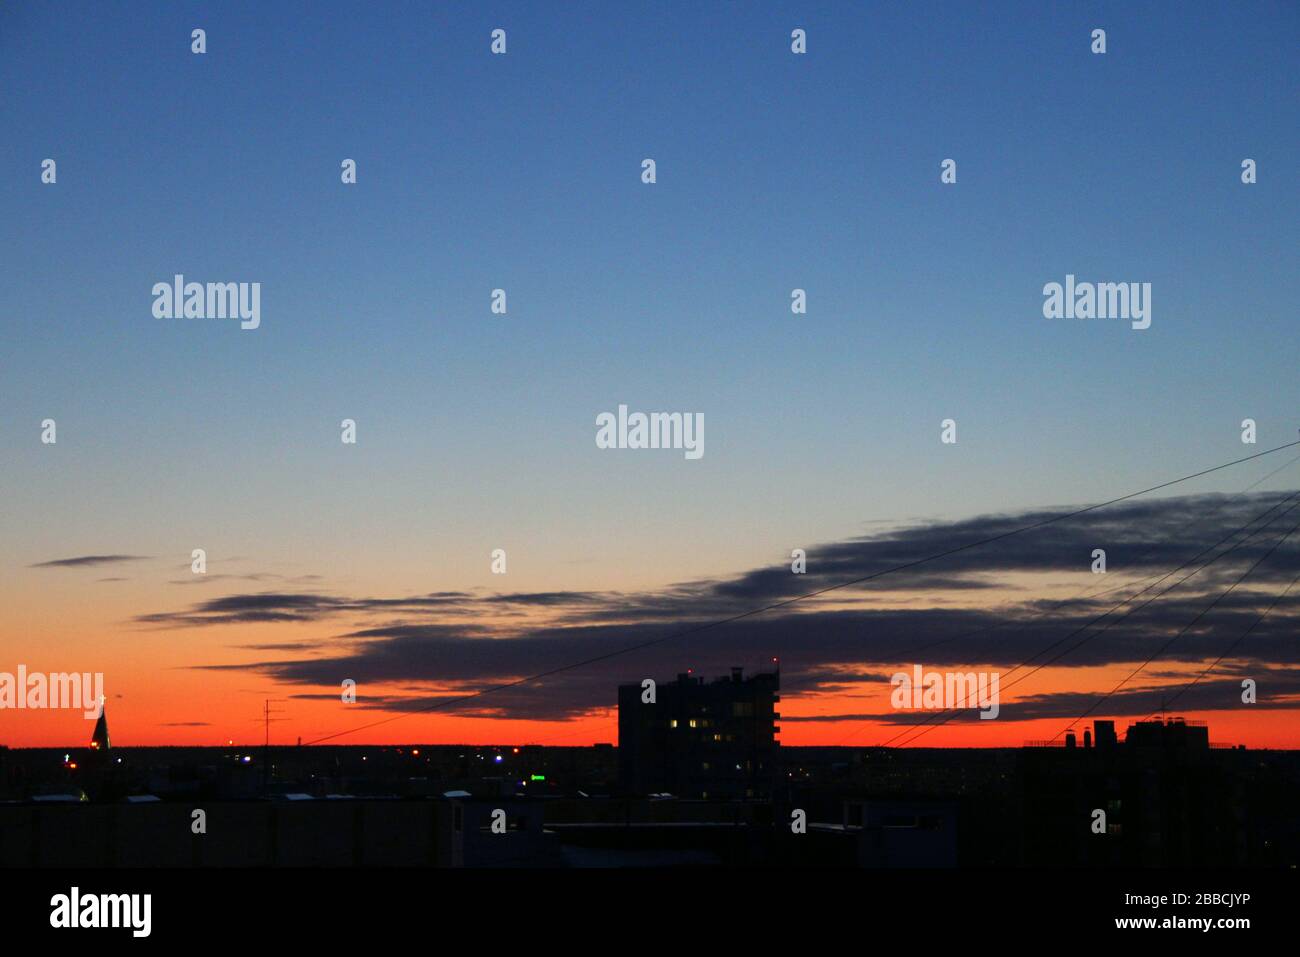 Dramatischer dunkelblauer Himmel mit Wolken bei Sonnenuntergang oder Sonnenaufgang mit einem leuchtend roten Streifen über dem Horizont in der Dämmerung. Stockfoto